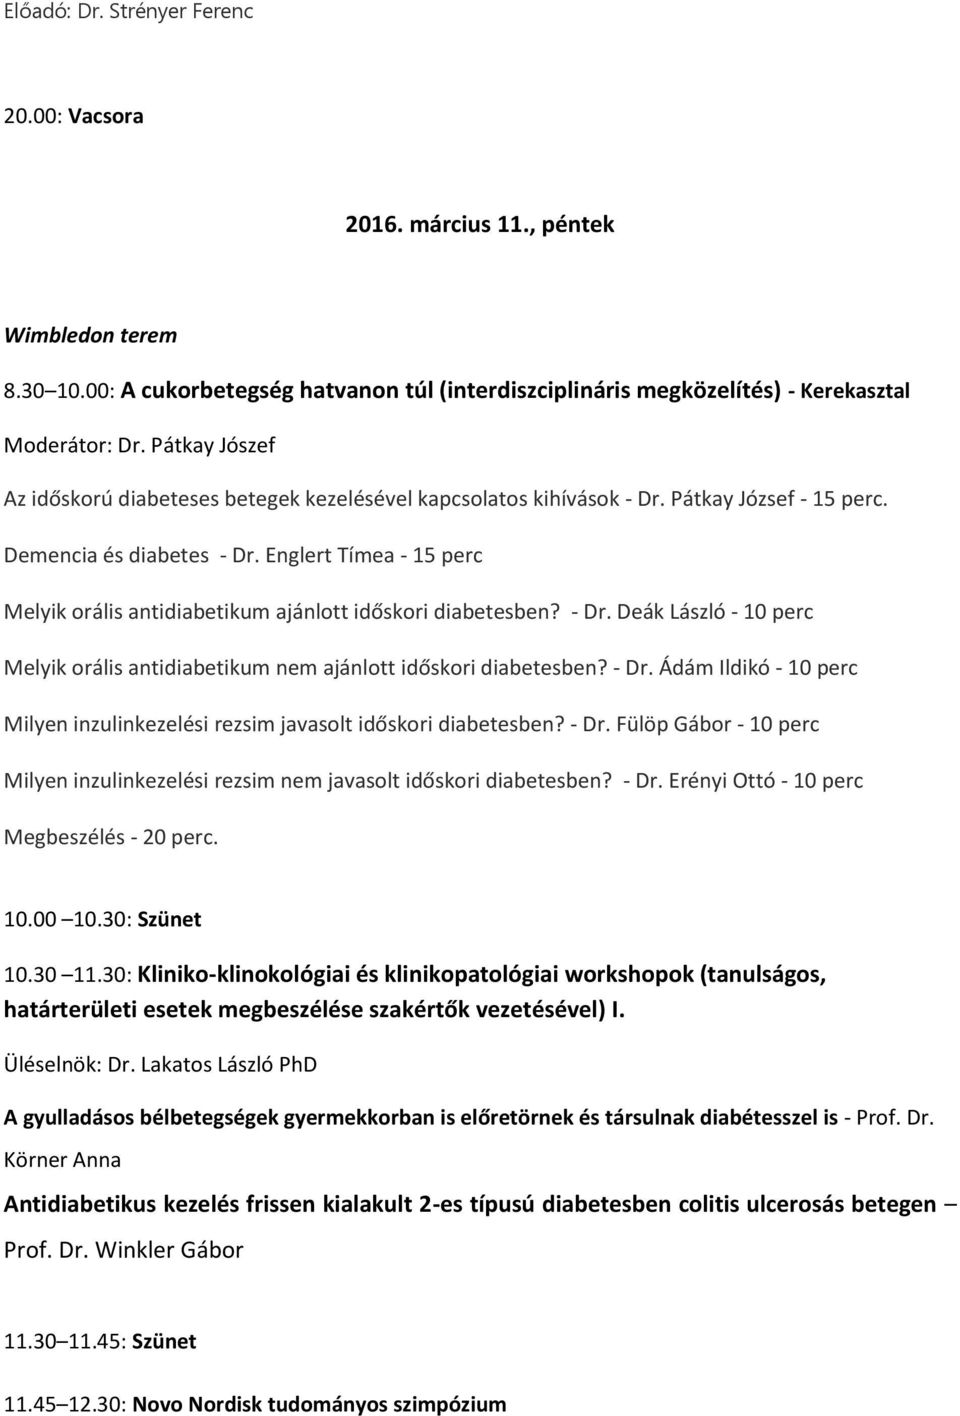 PROGRAMFÜZET. A veszprémi Csolnoky Ferenc Kórház, a MESZK veszprémi  területi szervezete és a Vanderlich Kft. tisztelettel meghívja Önt és  munkatársait - PDF Free Download